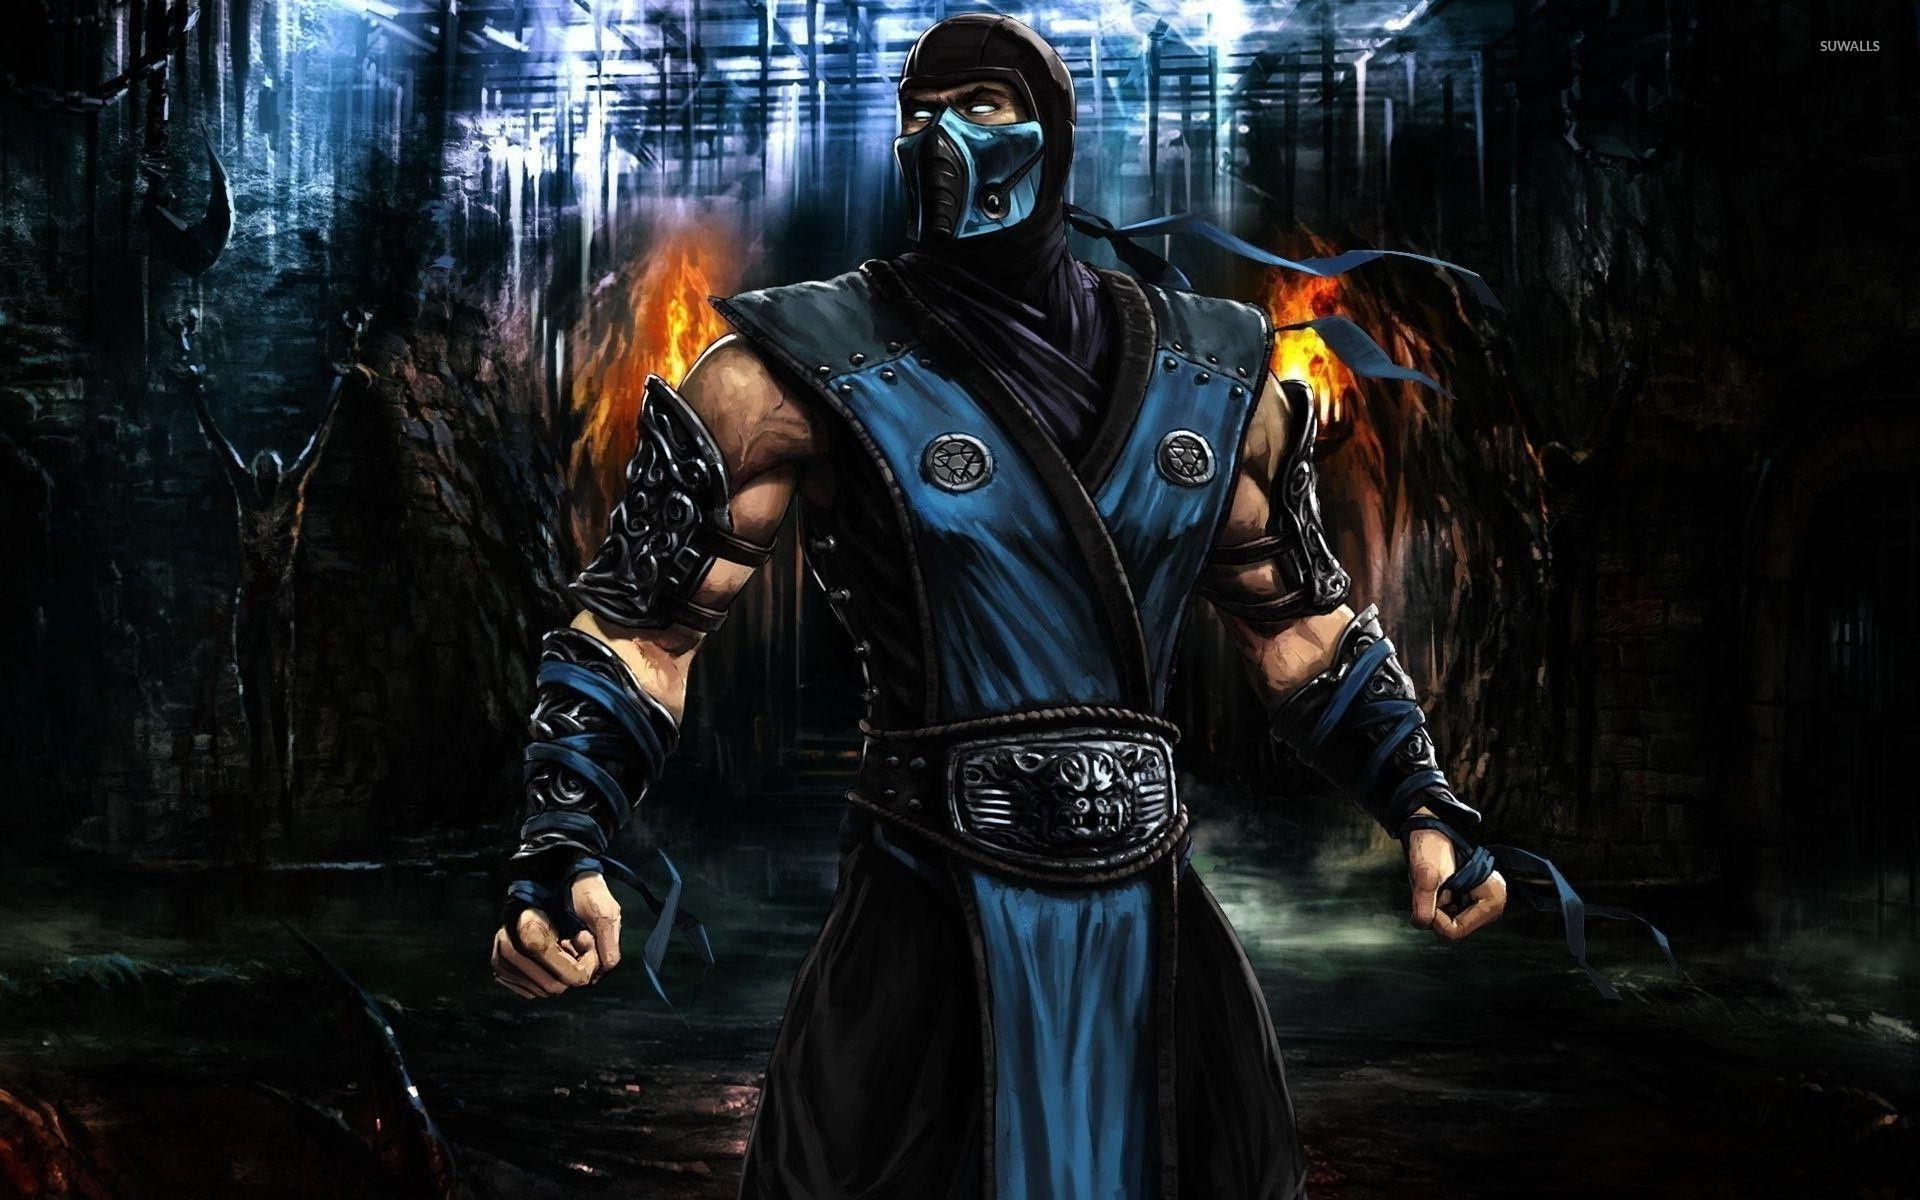 Mortal Kombat Kung Lao Wallpapers - Top Free Mortal Kombat Kung Lao ...